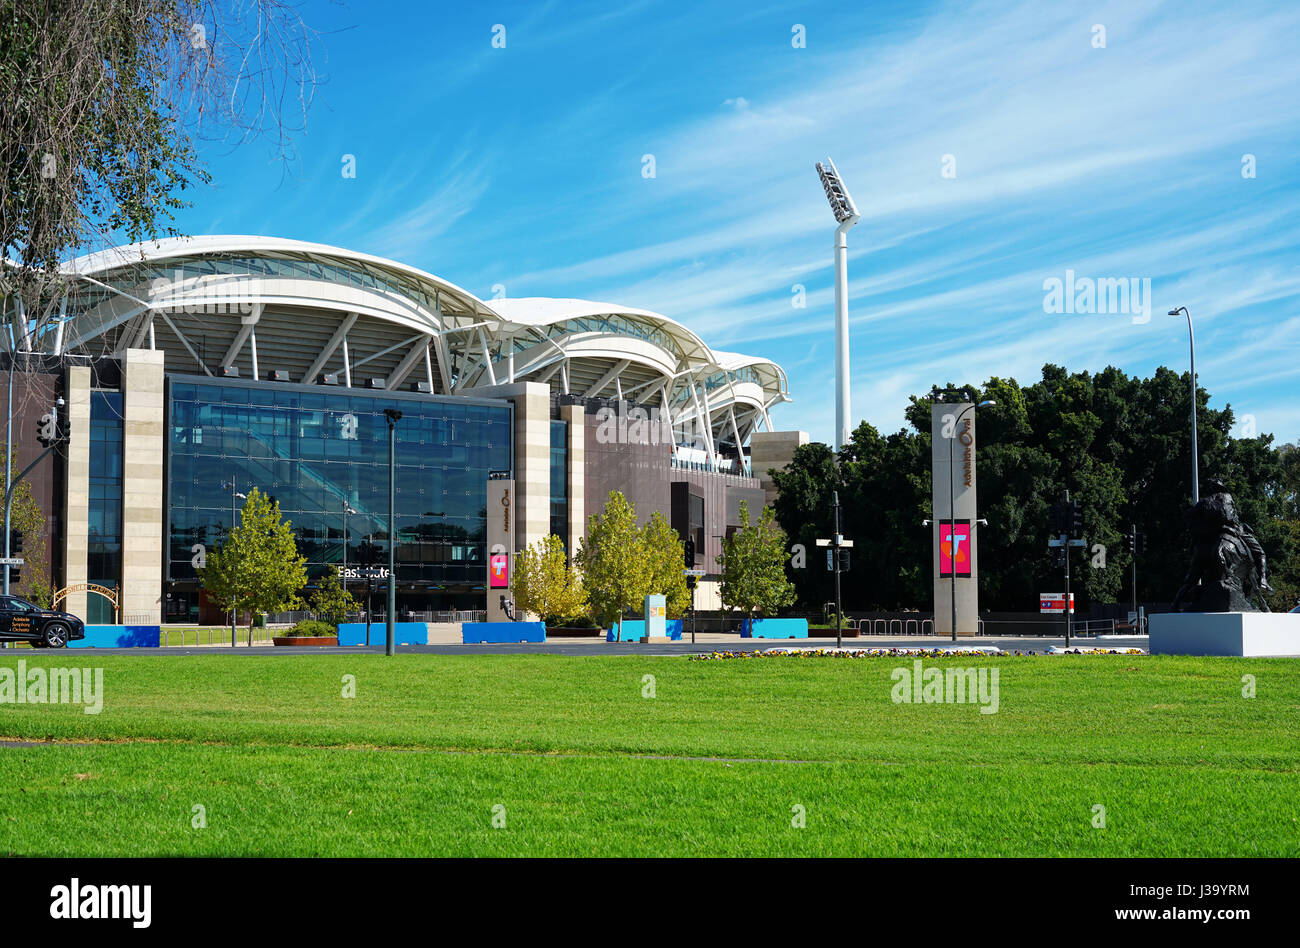 ADELAIDE, AUSTRALIA DEL SUD - Aprile 8, 2017: Adelaide Oval Stadium, casa del South Australian Cricket Association, situato in un parco nei pressi di Ade Foto Stock